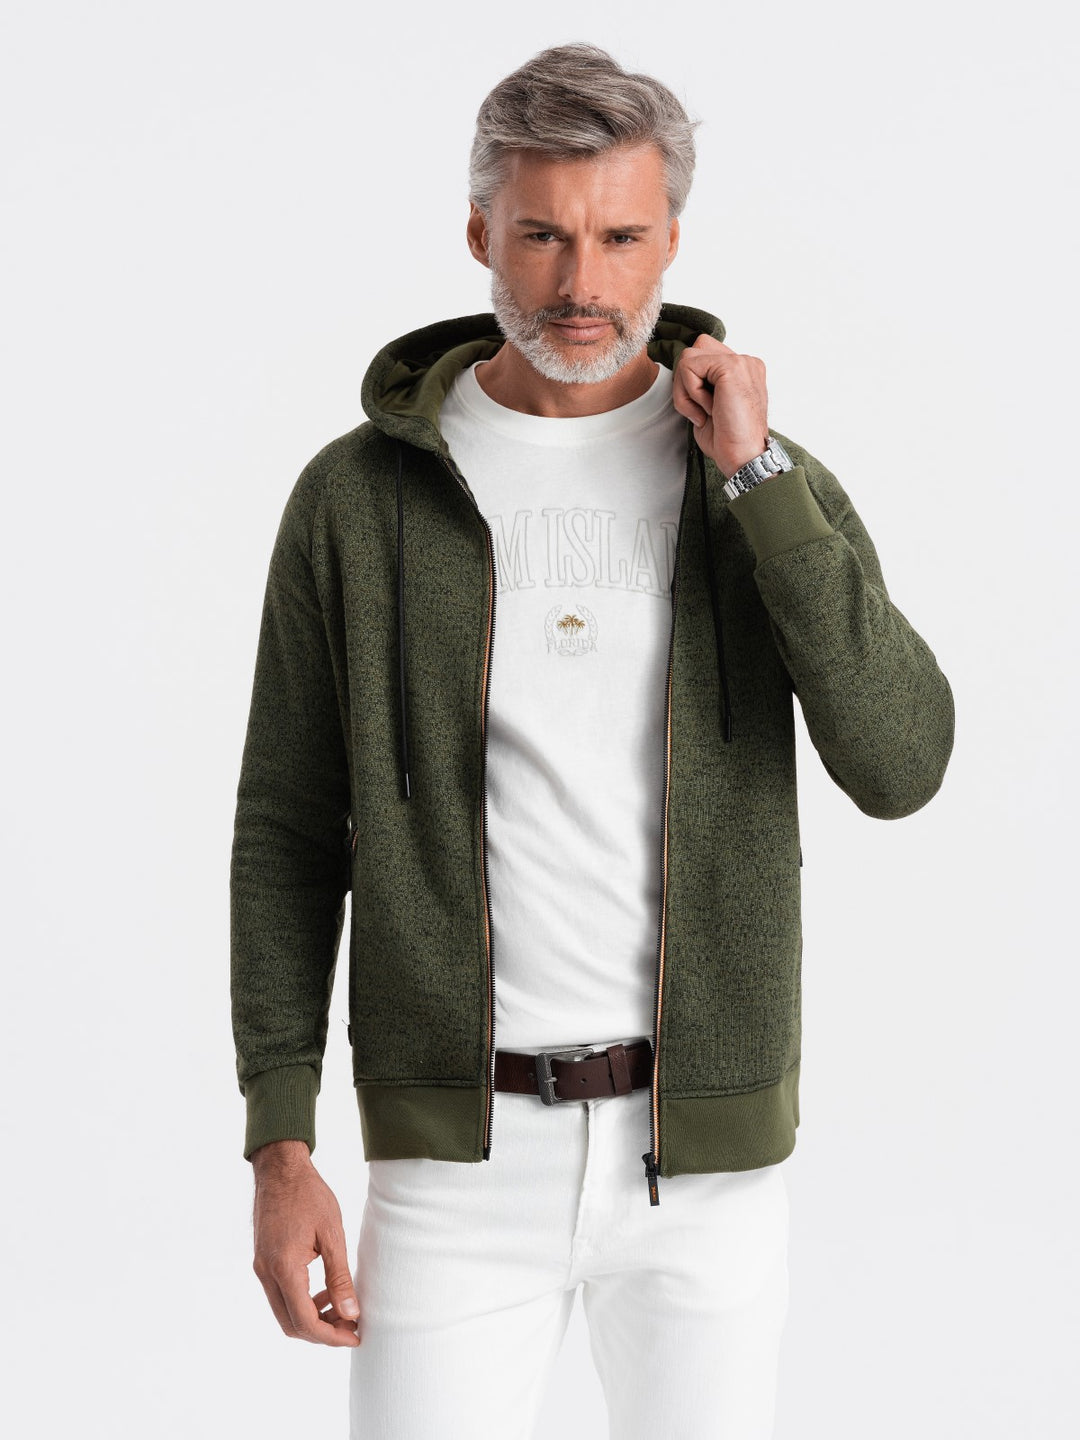 Hooded-Sweatshirt mit Reißverschluss in olive I Herren Mode Karlsruhe